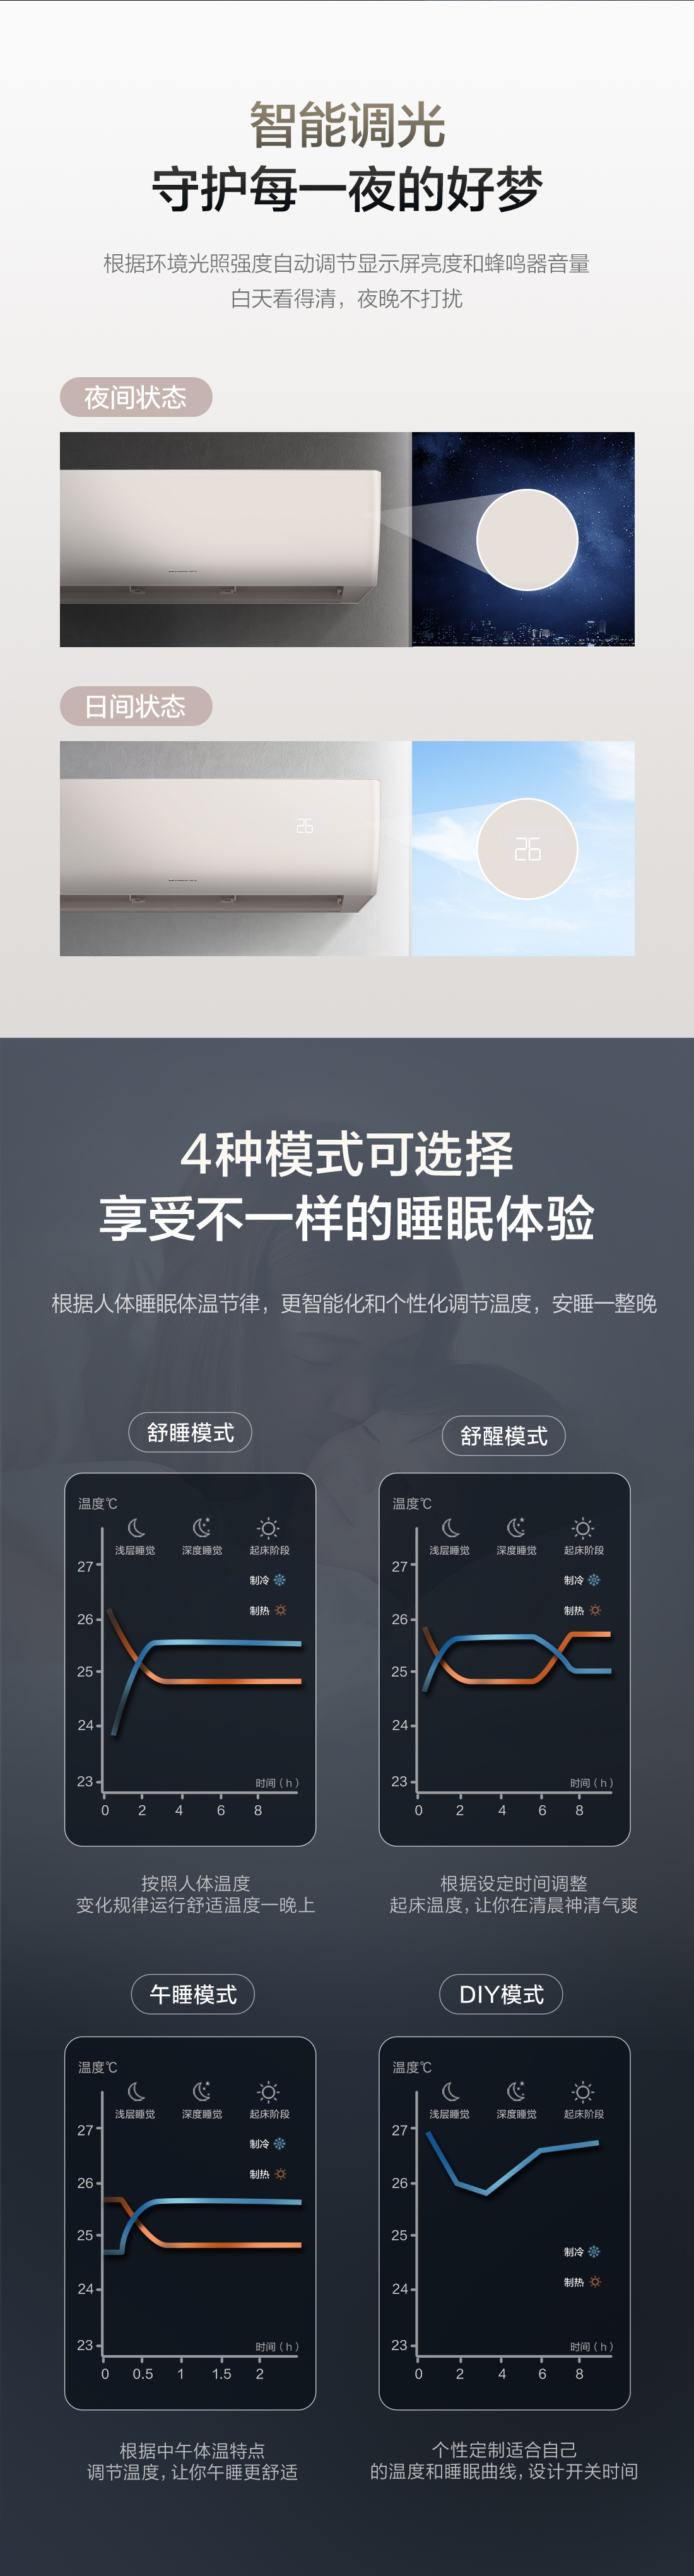 臻新风格力家用空调系列-上海春适电器销售有限公司-格力空调-格力中央空调